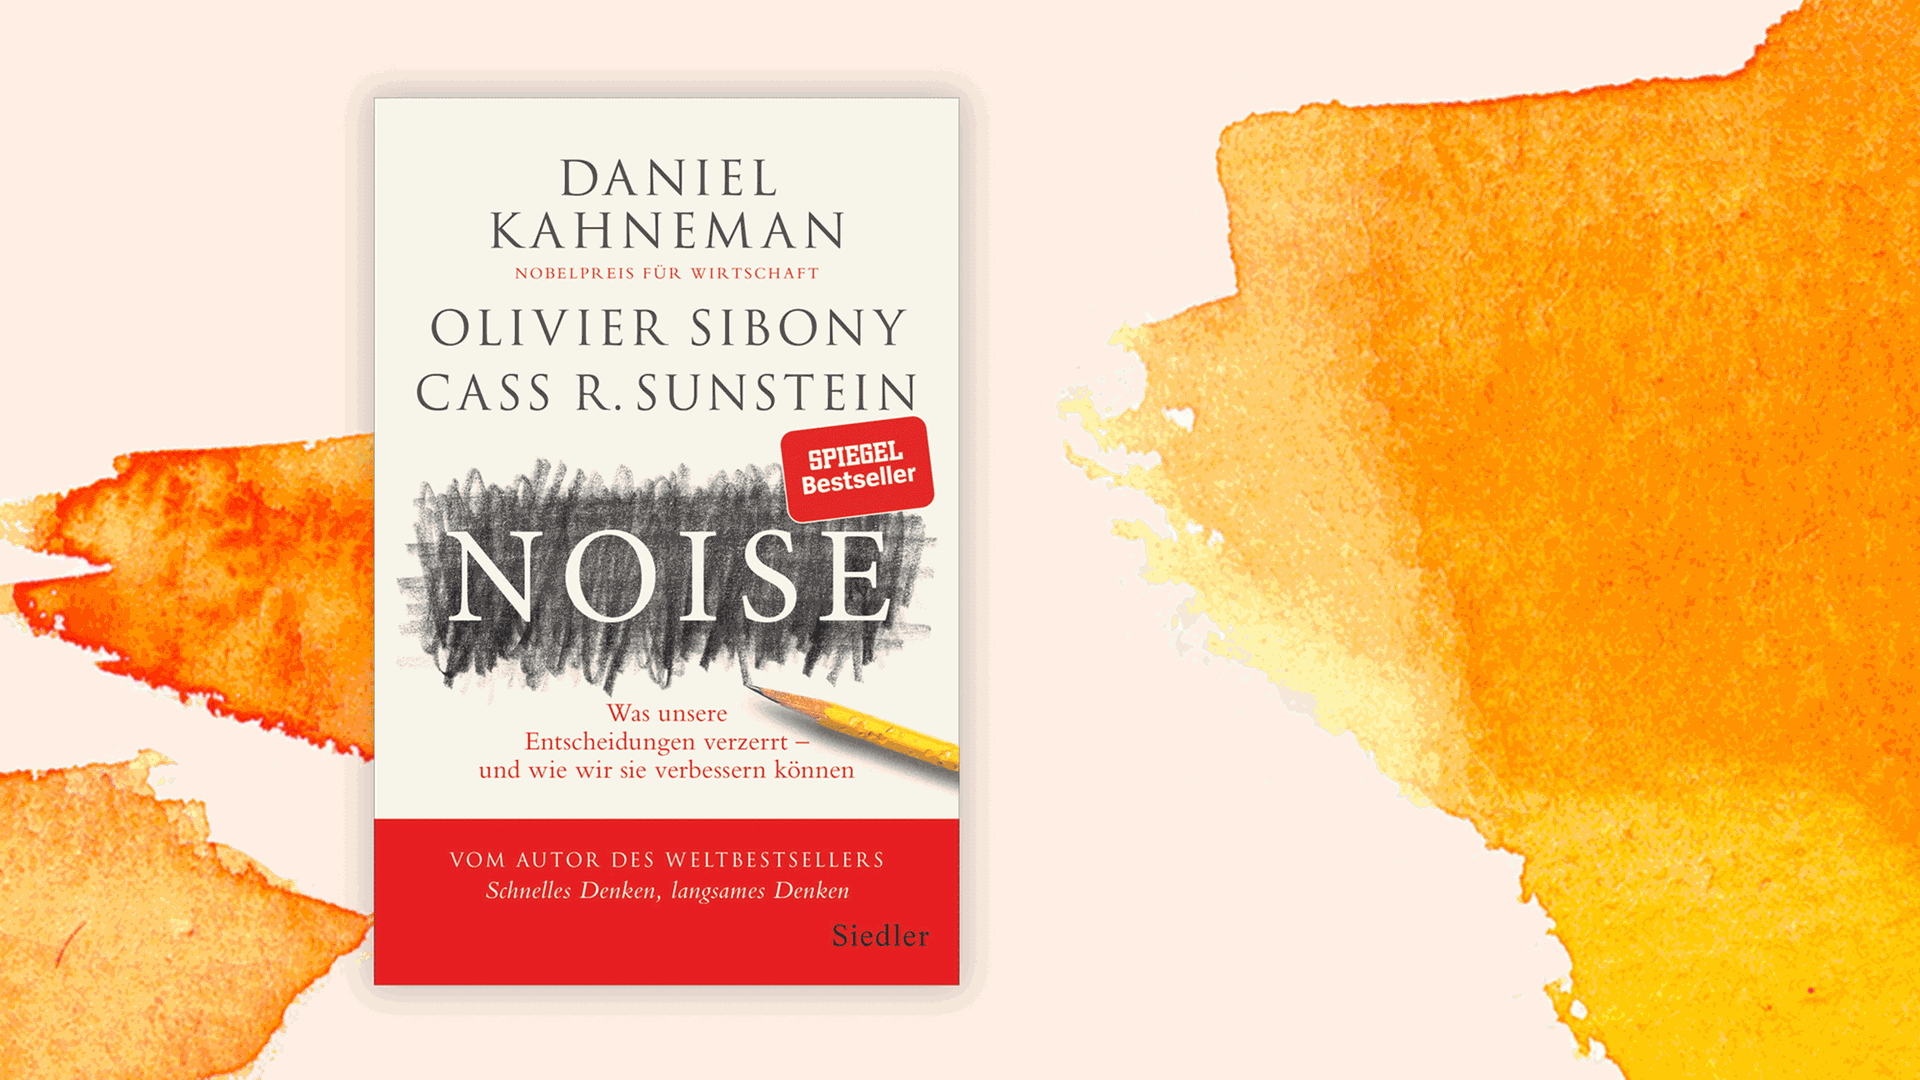 Cover des Buchs "Noise – Was unsere Entscheidungen verzerrt und wie wir sie verbessern können" von Daniel Kahneman, Olivier Sibony und Cass R. Sunstein